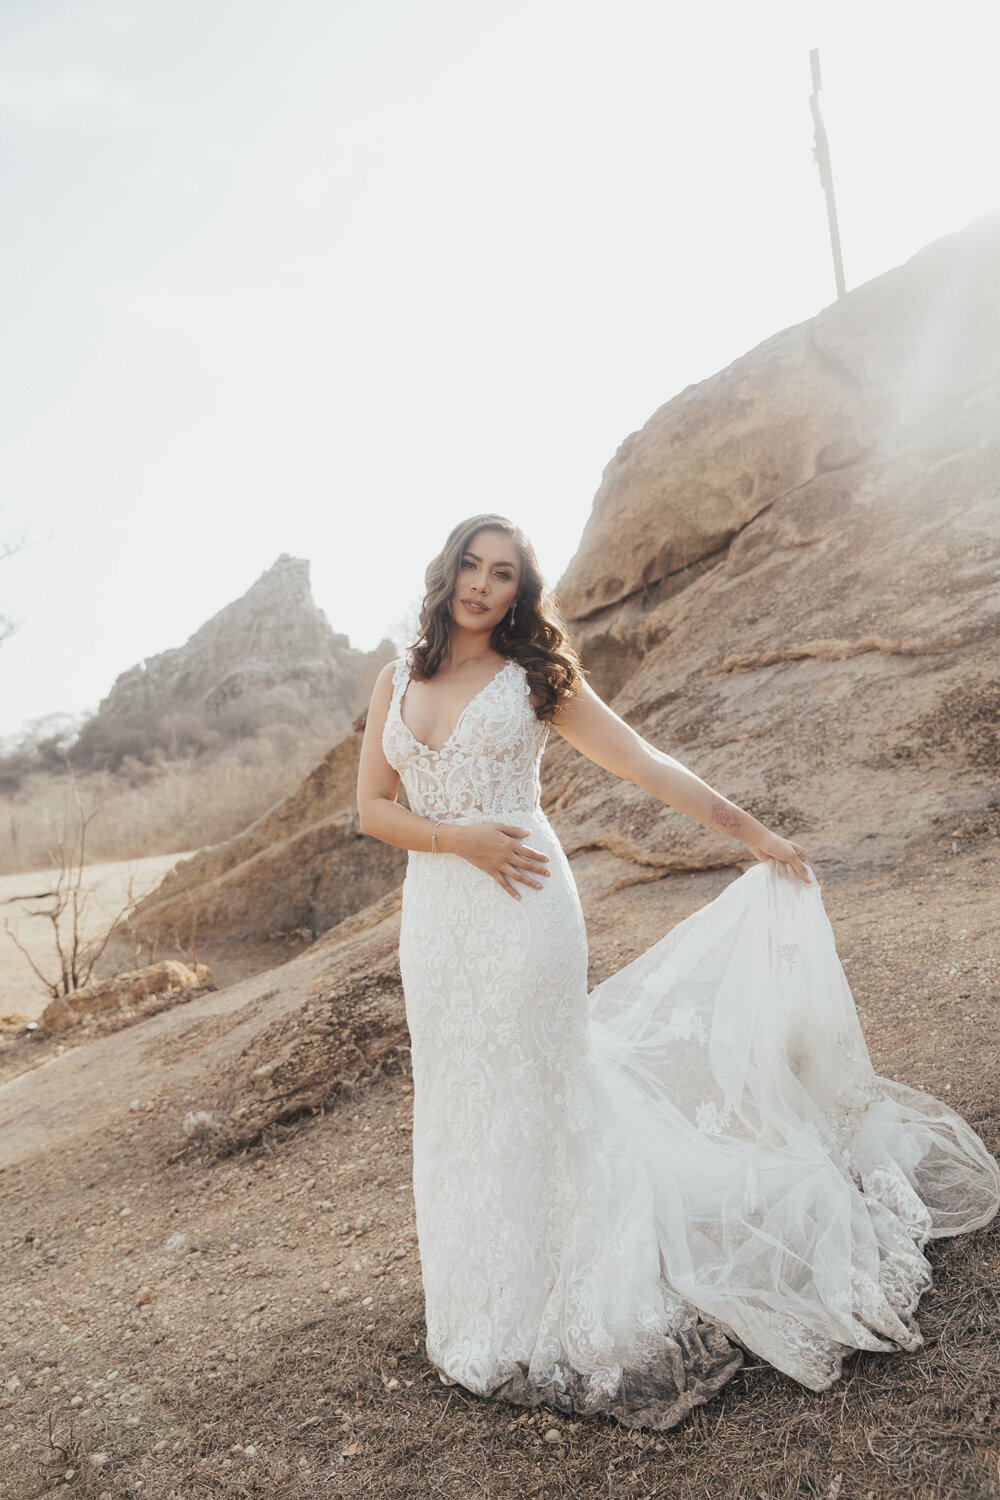 Michelle-Agurto-Fotografia-Bodas-Ecuador-Destination-Wedding-Photographer-Trash-the-Dress-Postboda-Belen-Danny-10.JPG